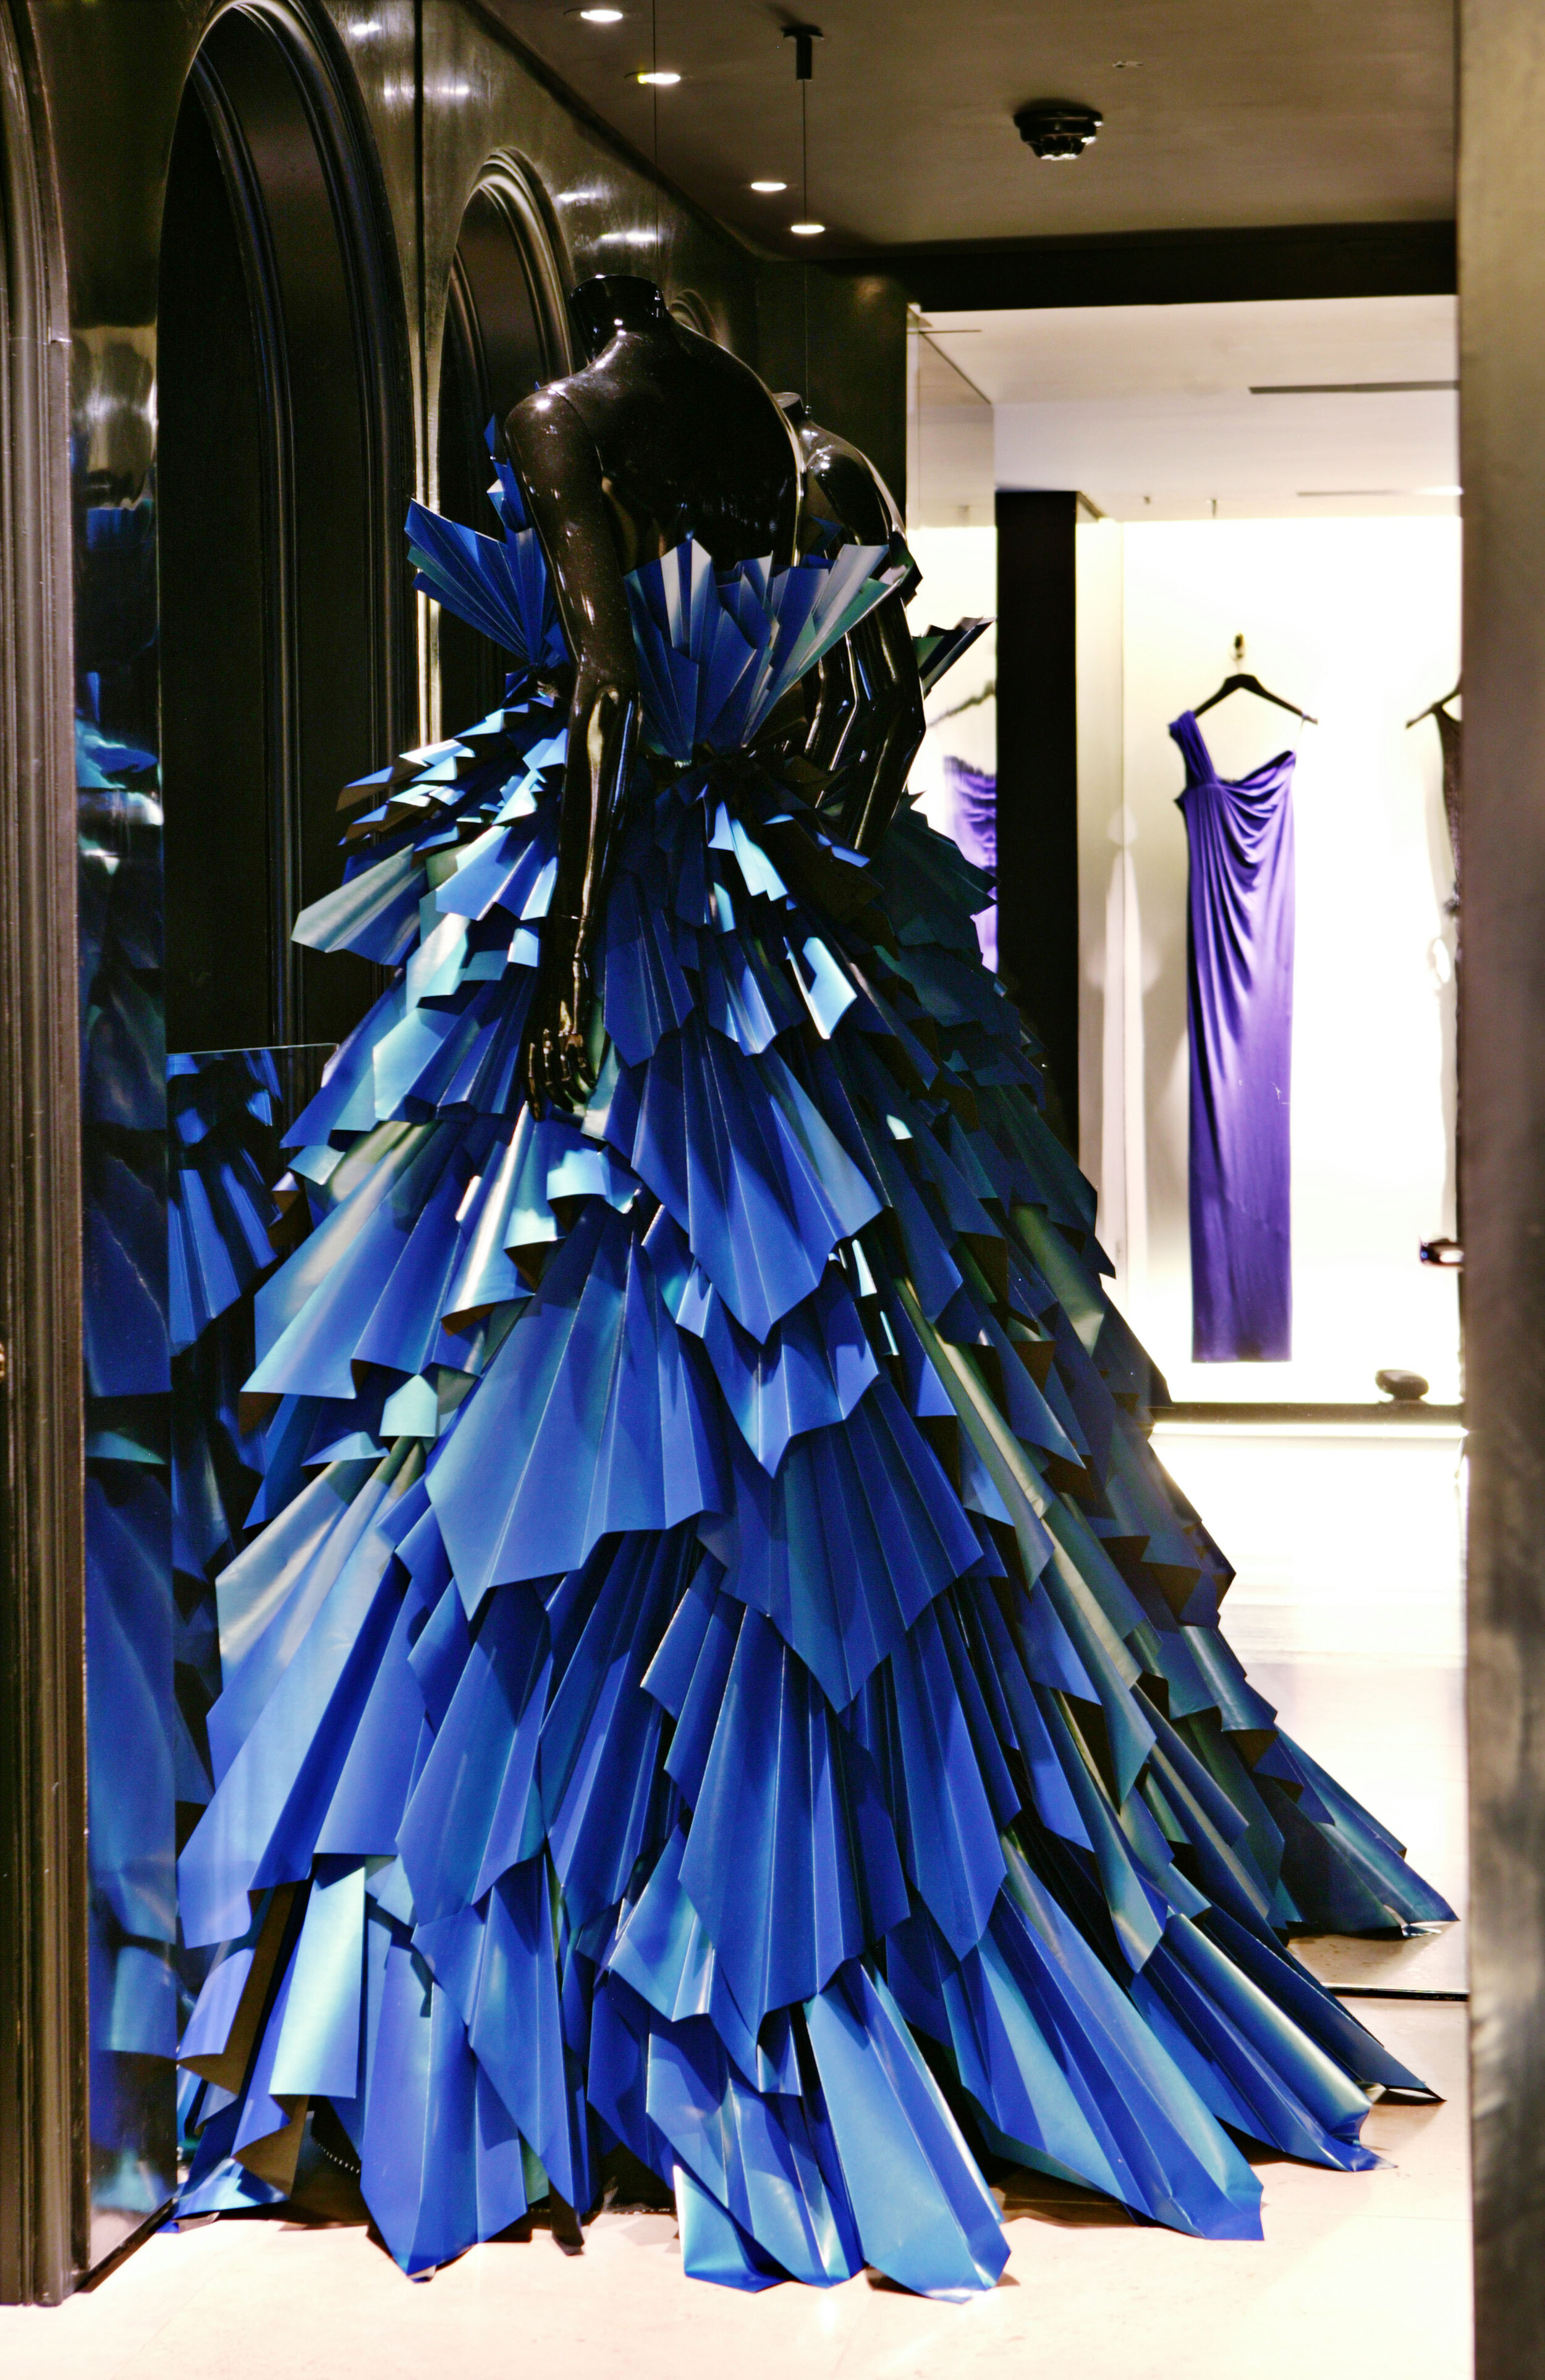 donna-karen-paper-dress-window-display-zoe-bradley-paper-art.jpg